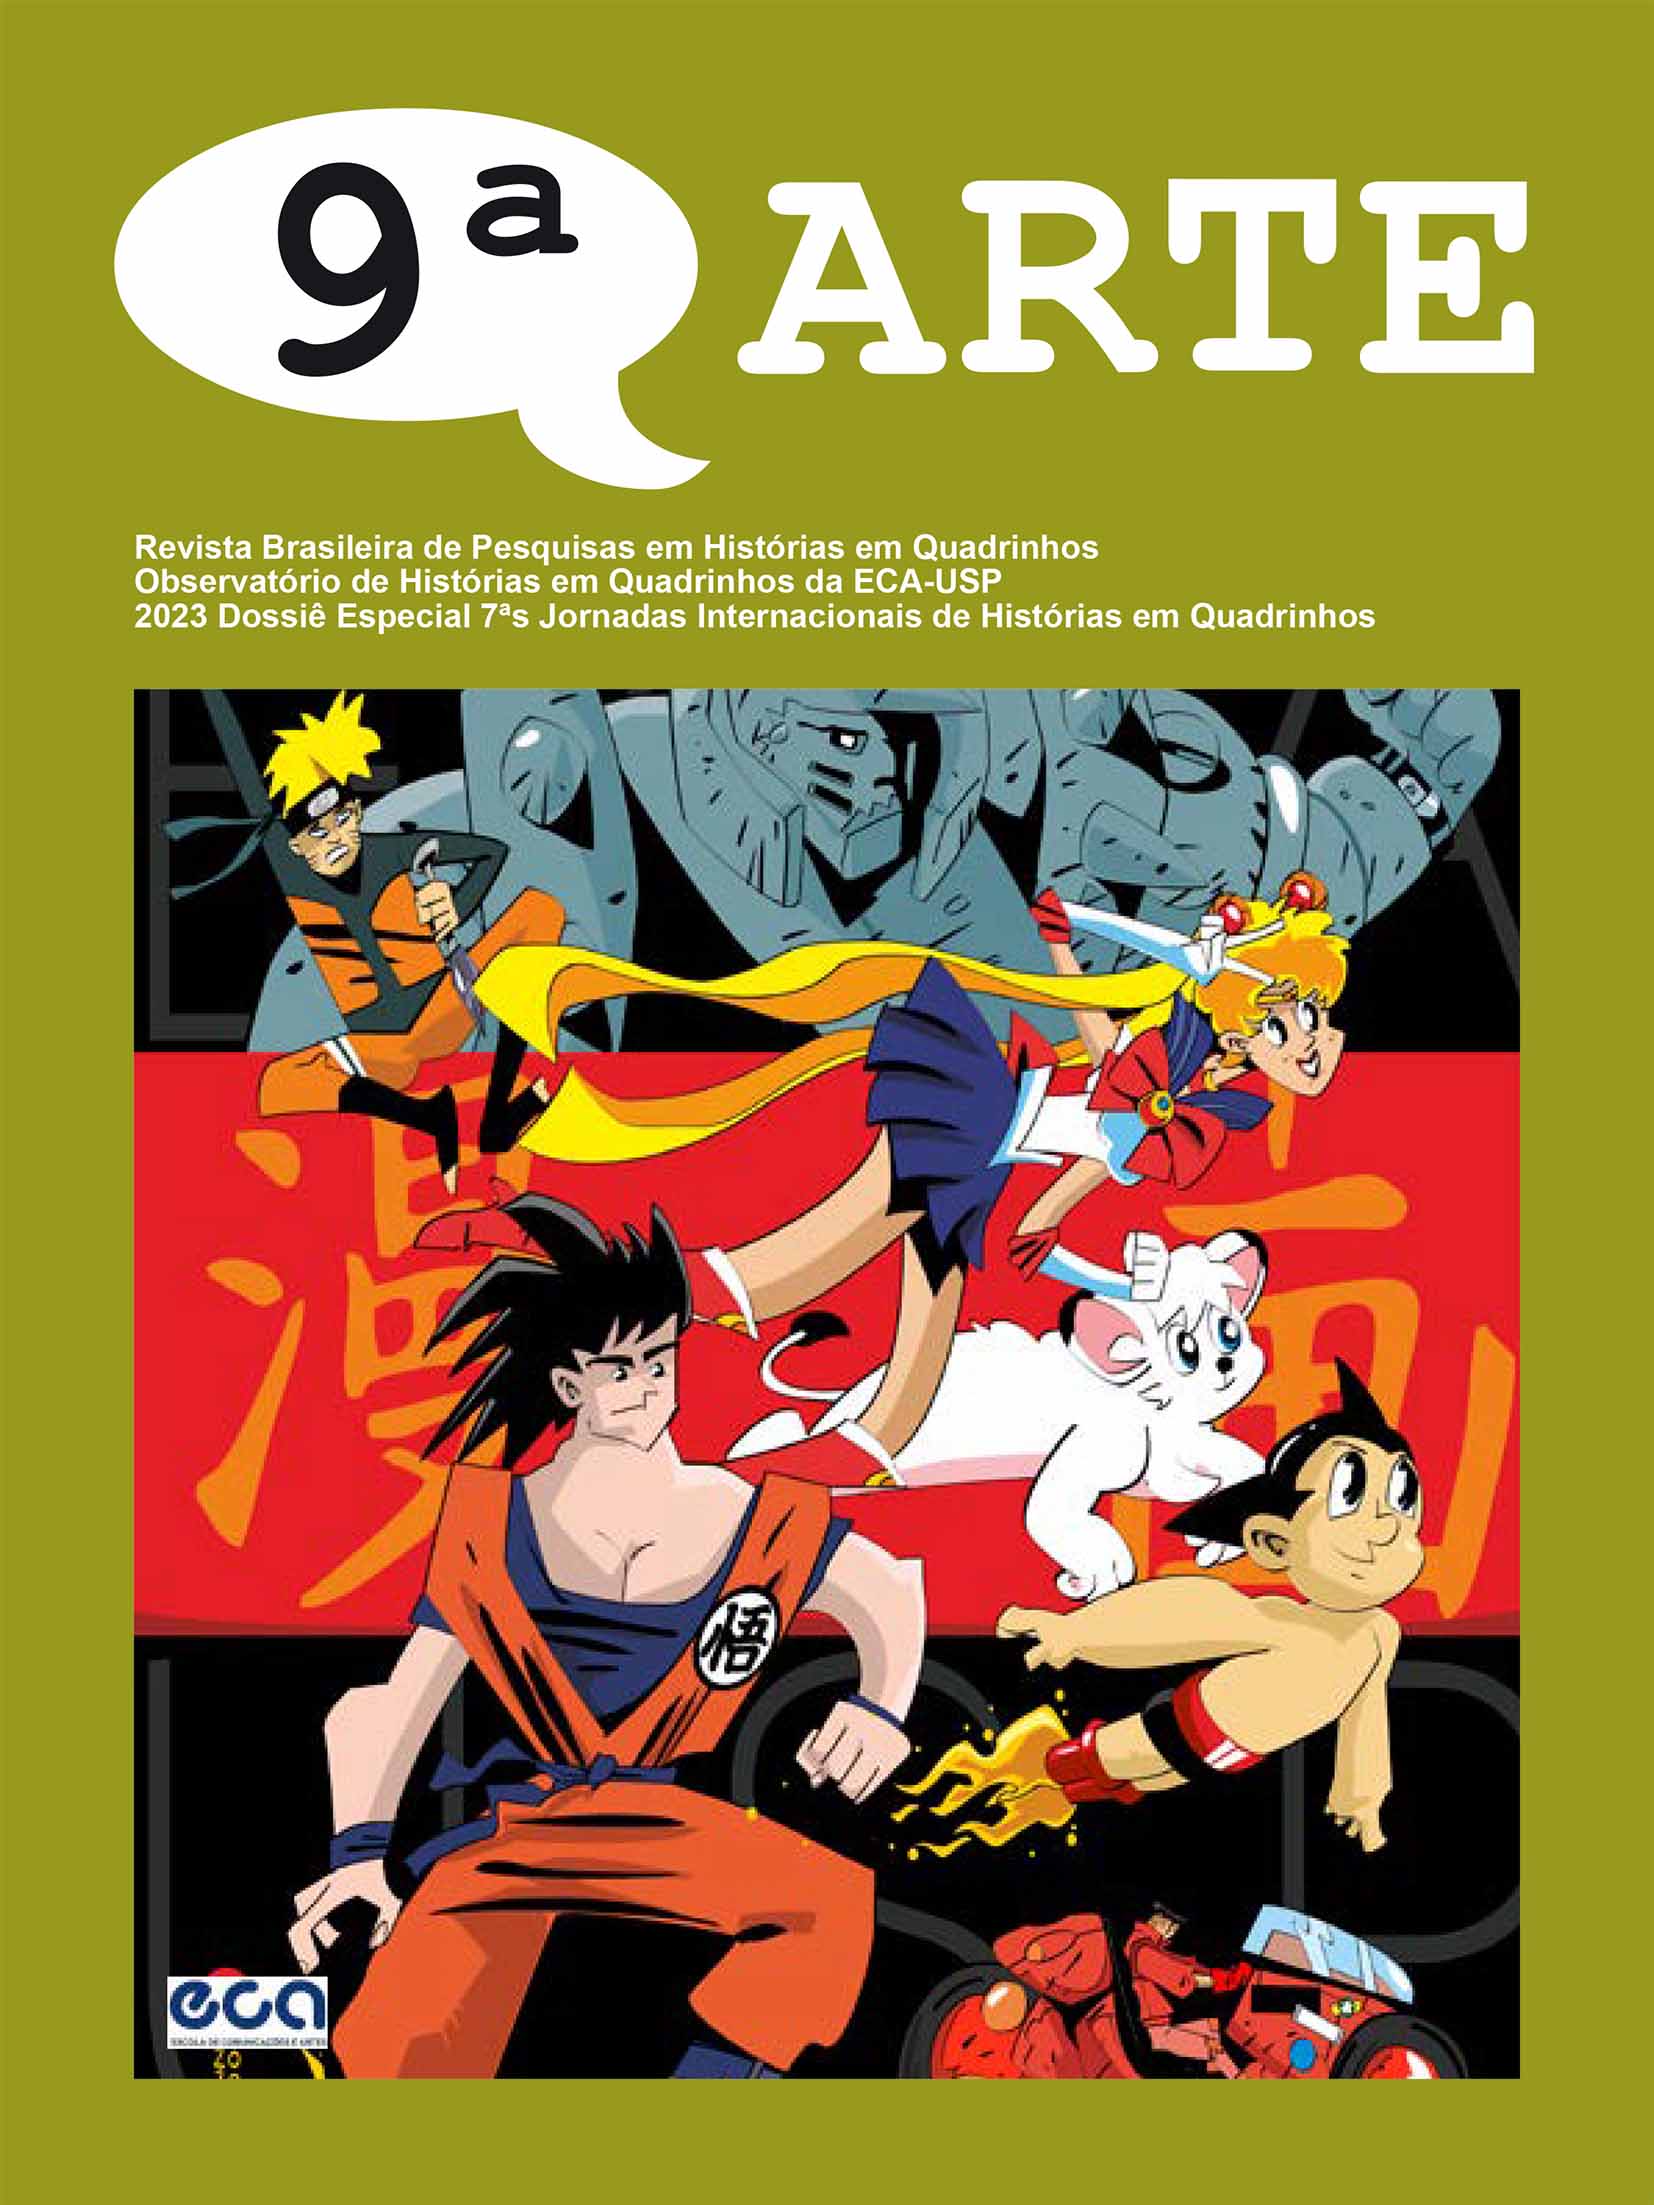 					Afficher 2023: Dossiê das 7as Jornadas Internacionais de Histórias em Quadrinhos
				